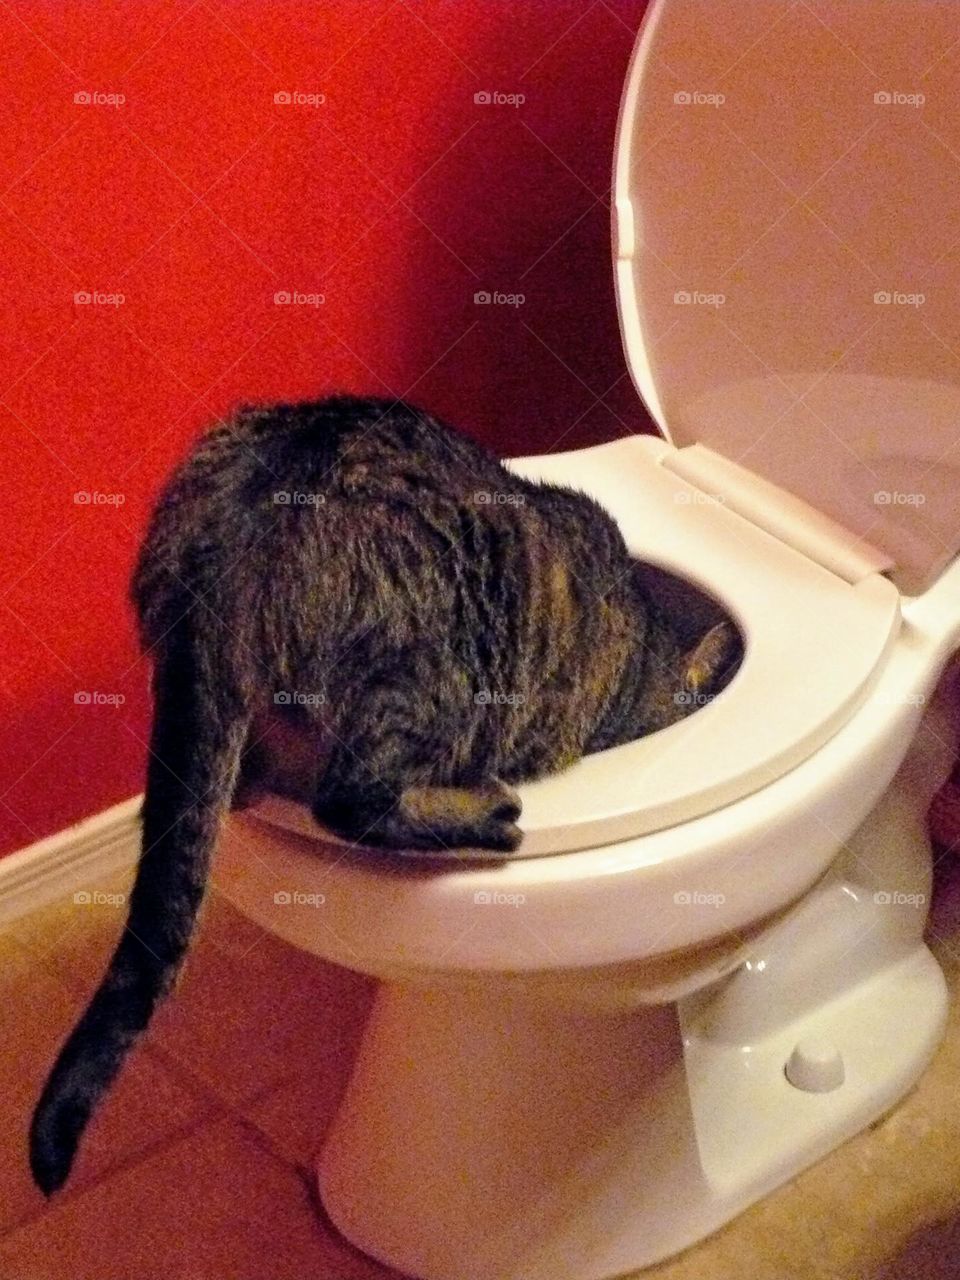 Feline plumber